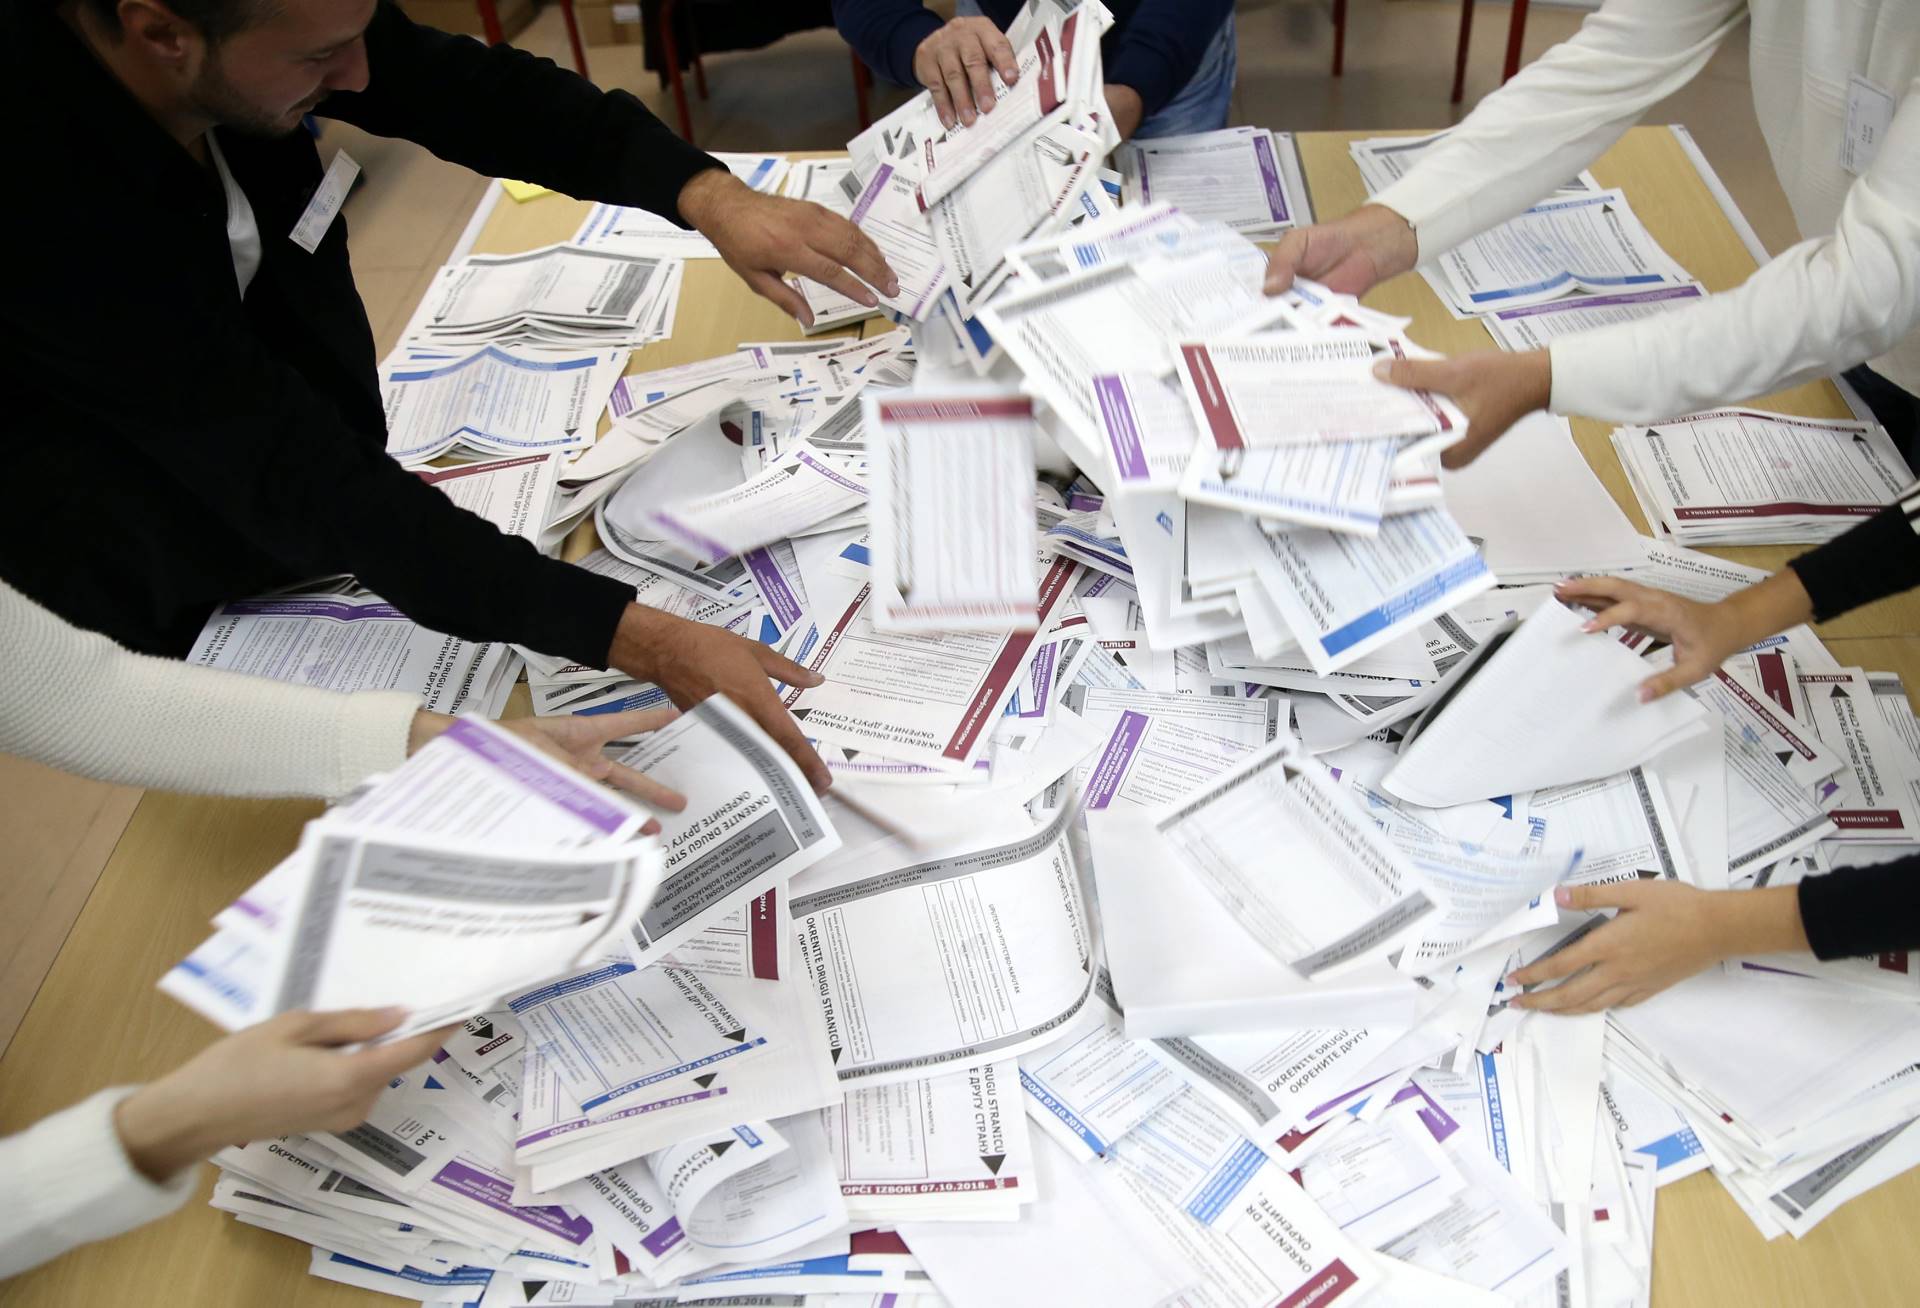 UKUPNO 130: CIK ovjerio prijave još 87 stranaka za učešće na lokalnim izborima